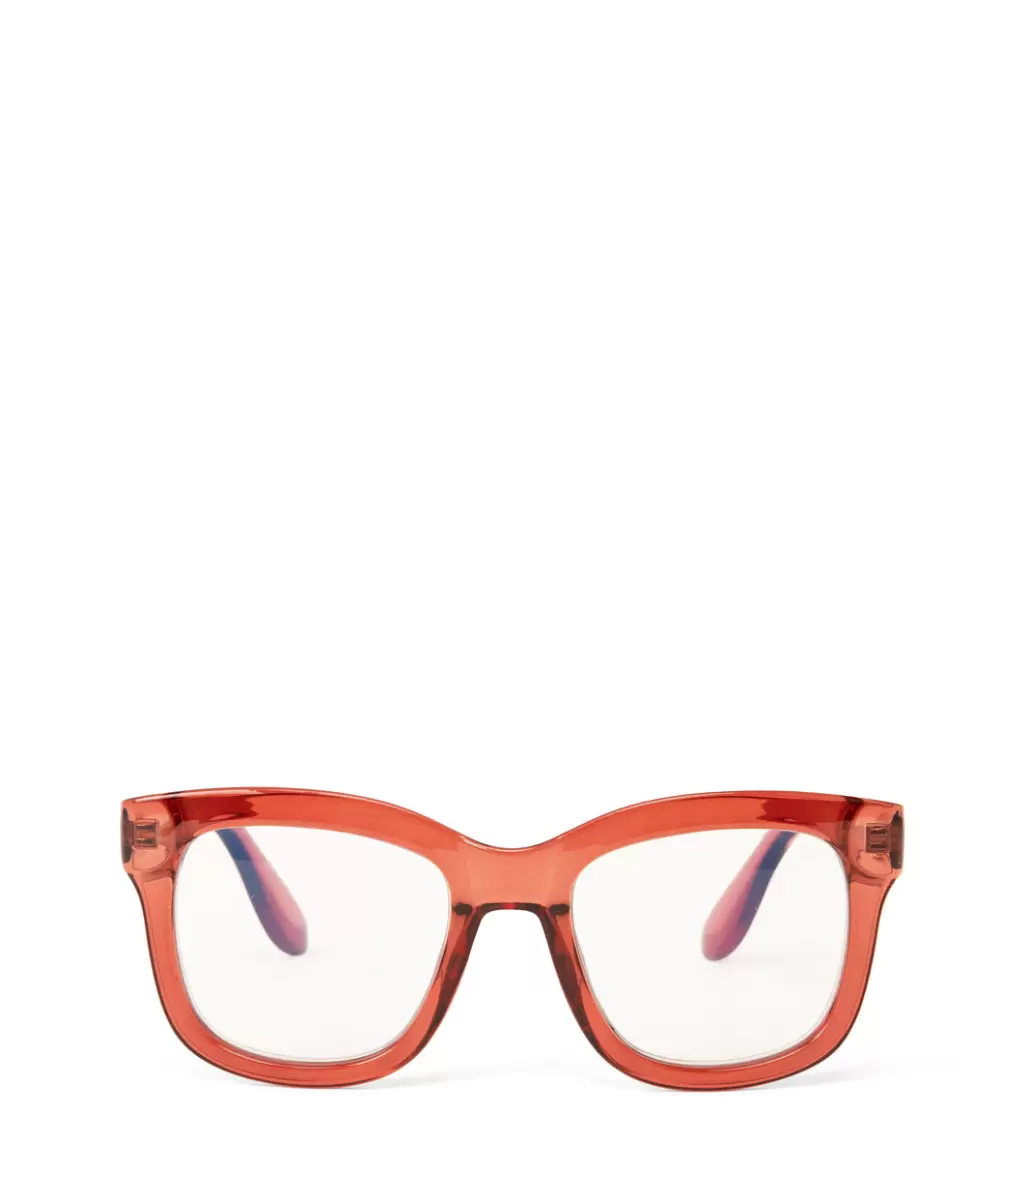 Women Optical Glasses Brown Charlet-3 Recycled Wayfarer Reading Glasses Buy Matt & Nat